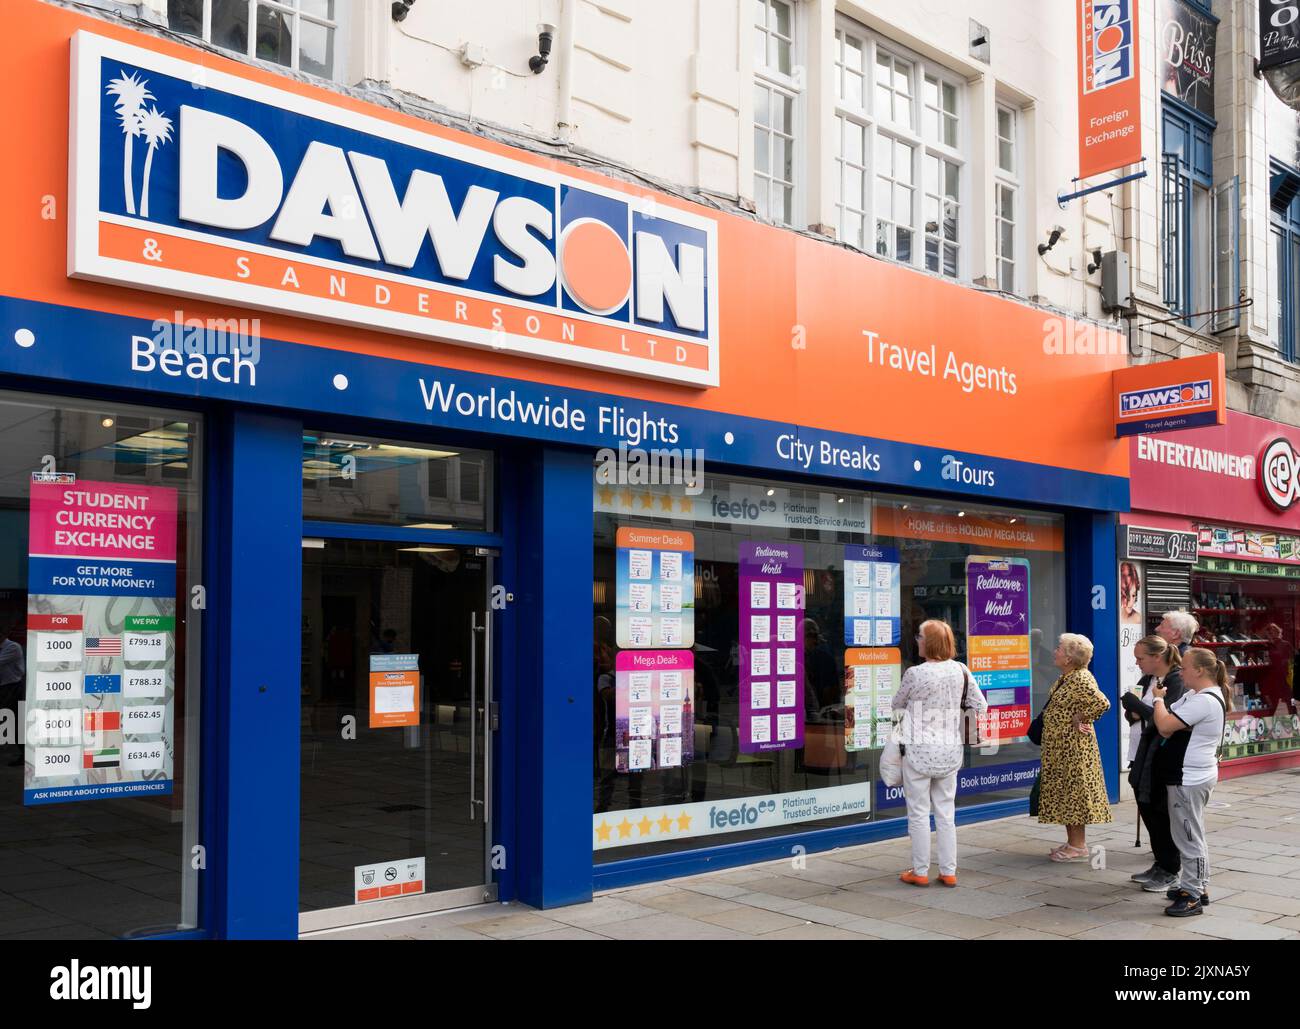 Personnes regardant dans la fenêtre de Dawson et Sanderson, agents de voyage, sur la rue Northumberland, Newcastle upon Tyne, Angleterre, ROYAUME-UNI Banque D'Images